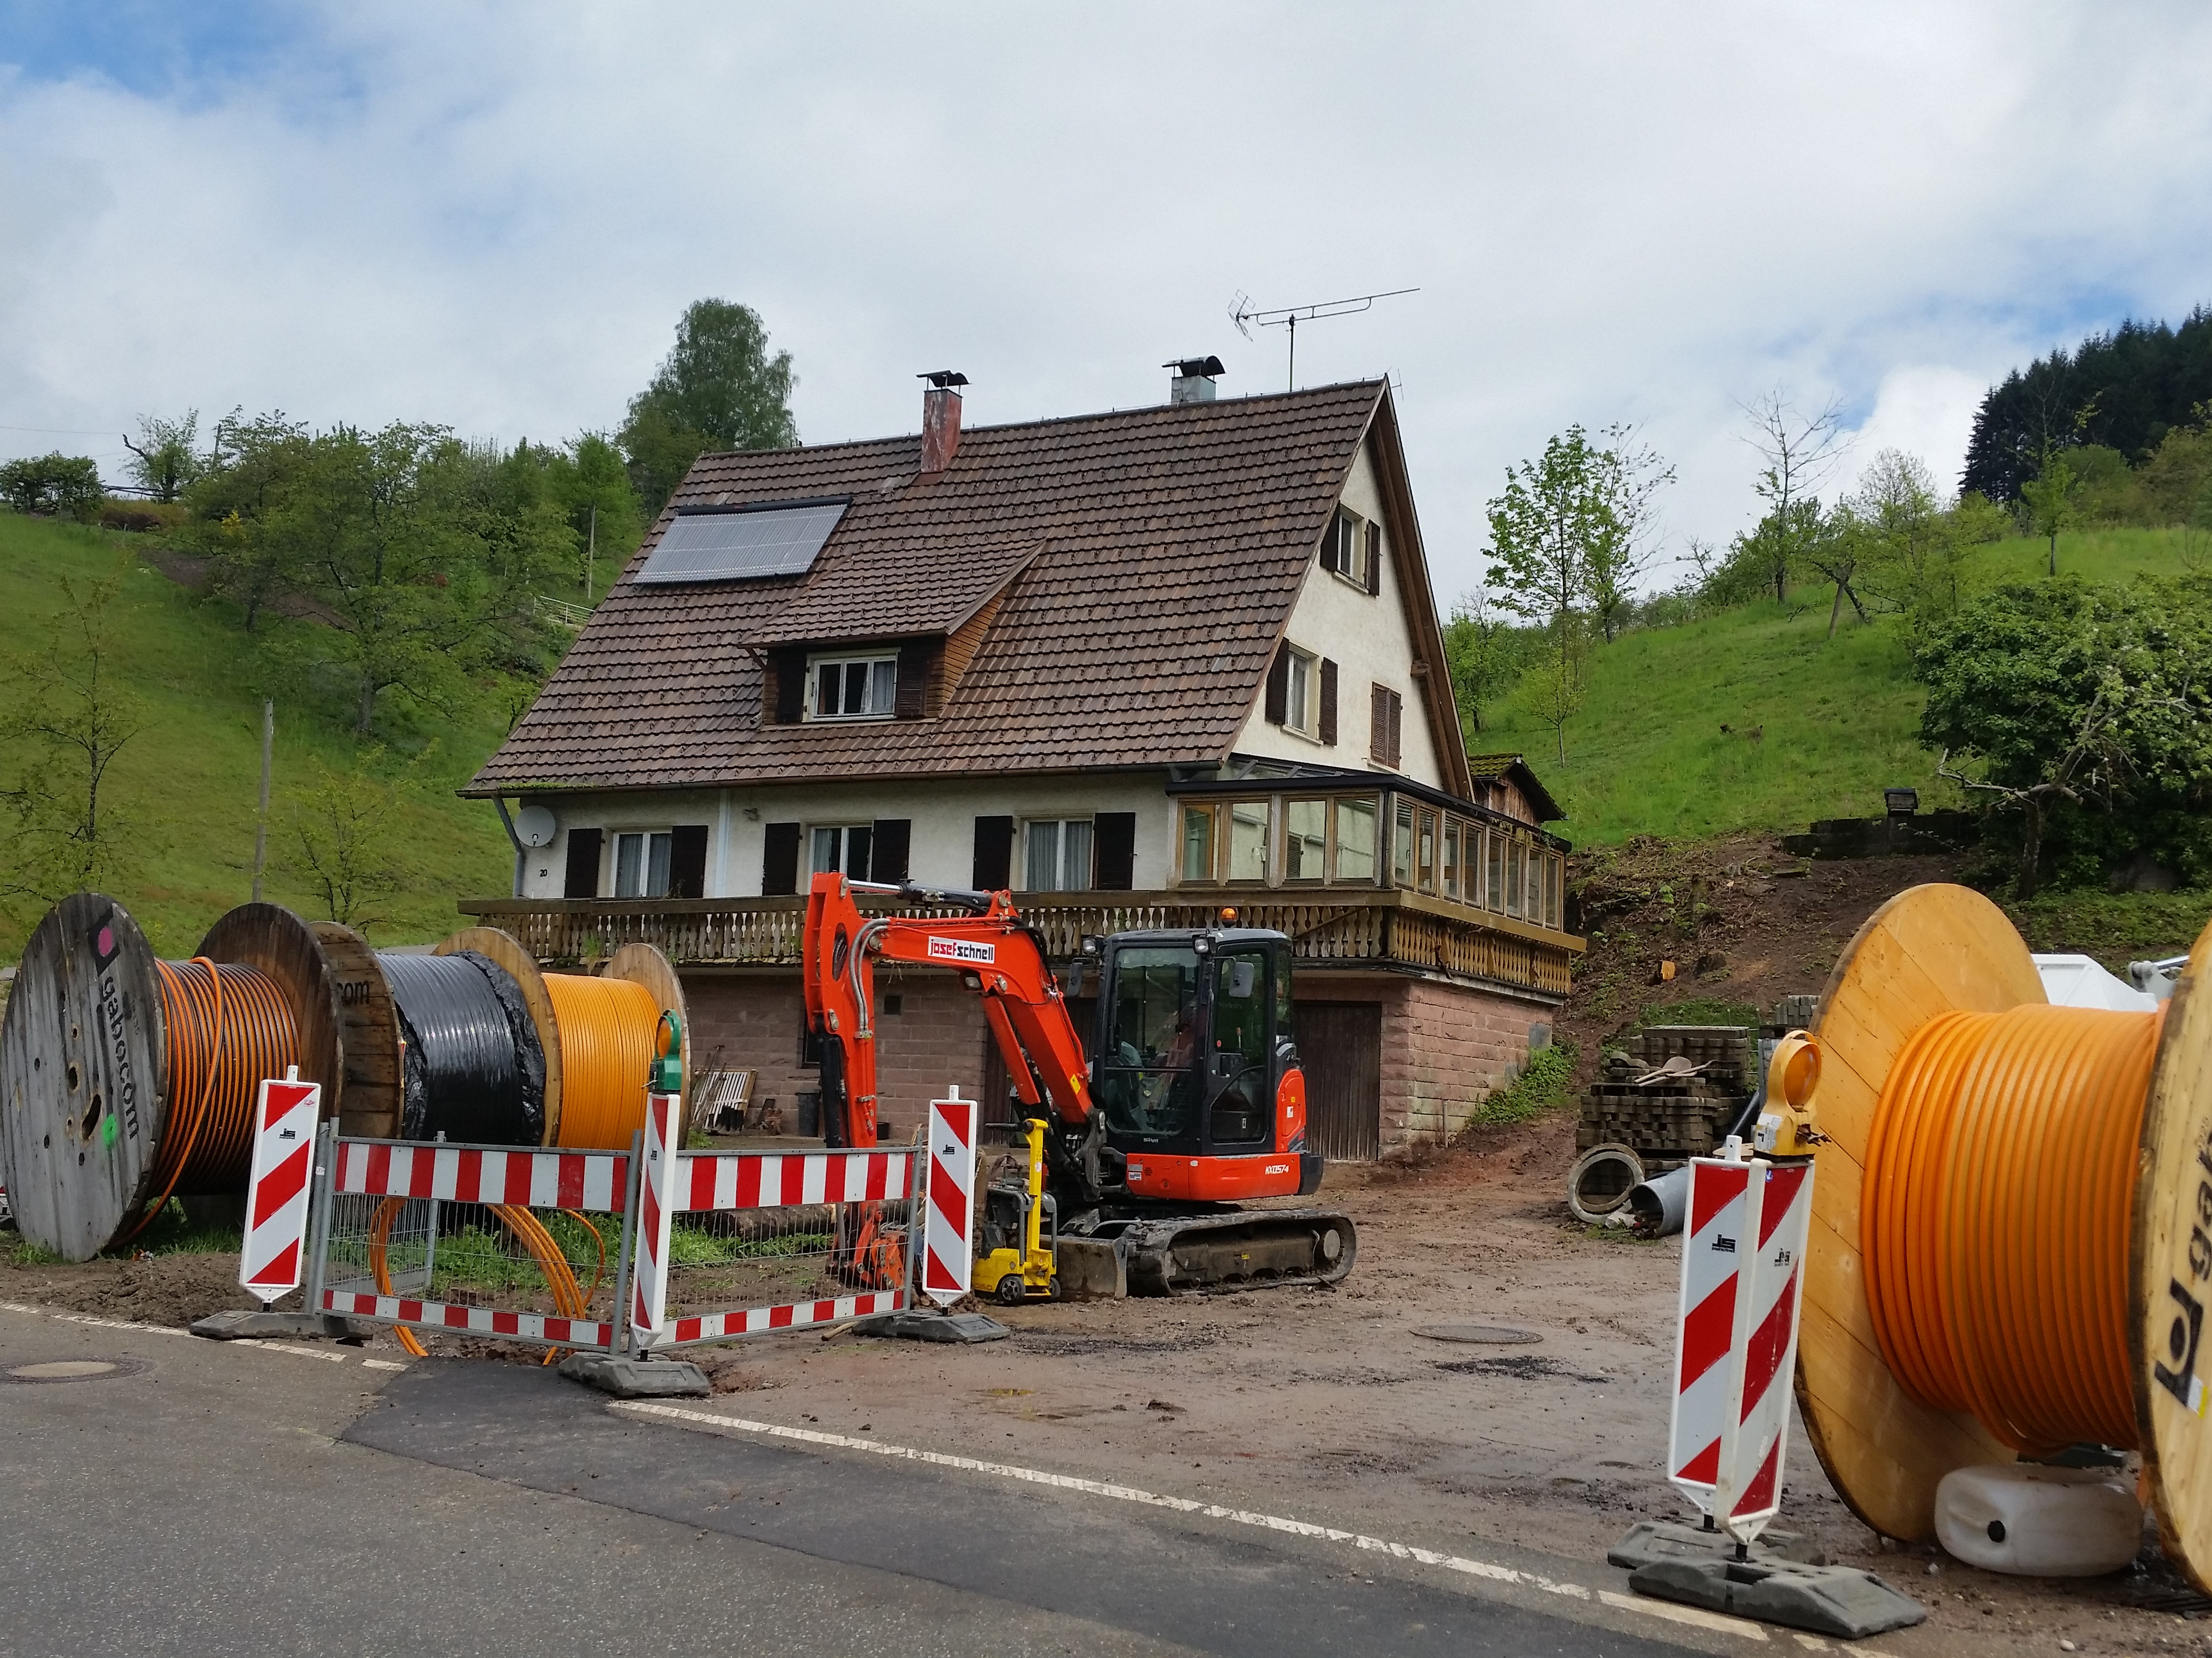                                                     Bauarbeiten Bauabschnitt 1 im Grimmerswald                                    